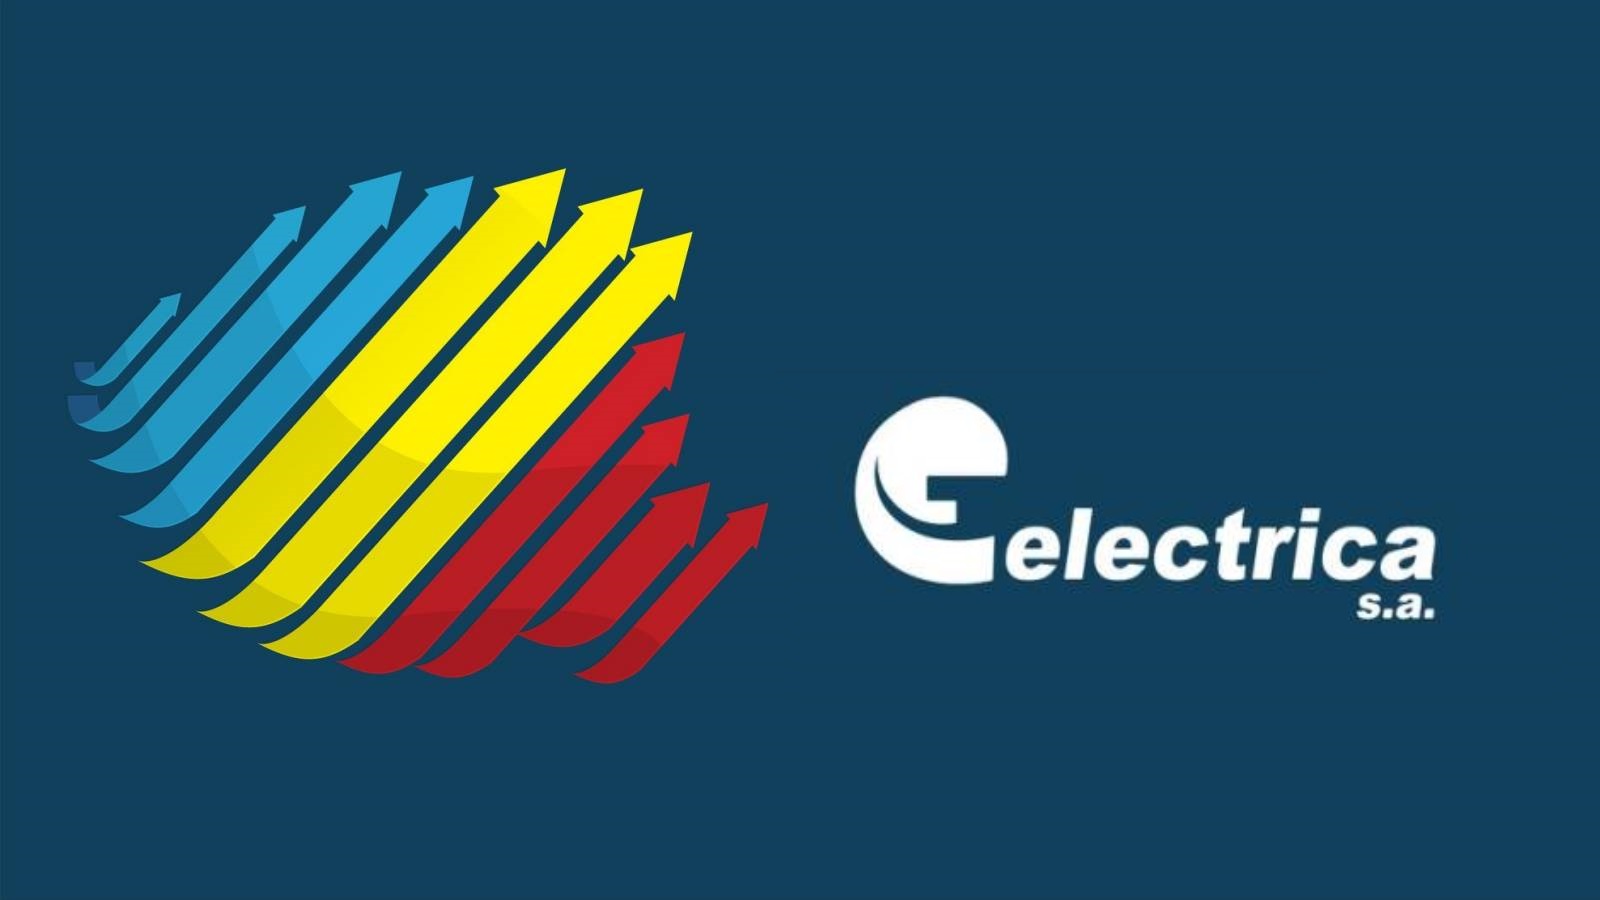 Electrica Ny formel bekræftelse i SIDSTE ØJEBLIK Visning af MILLIONER af kunder Rumænien